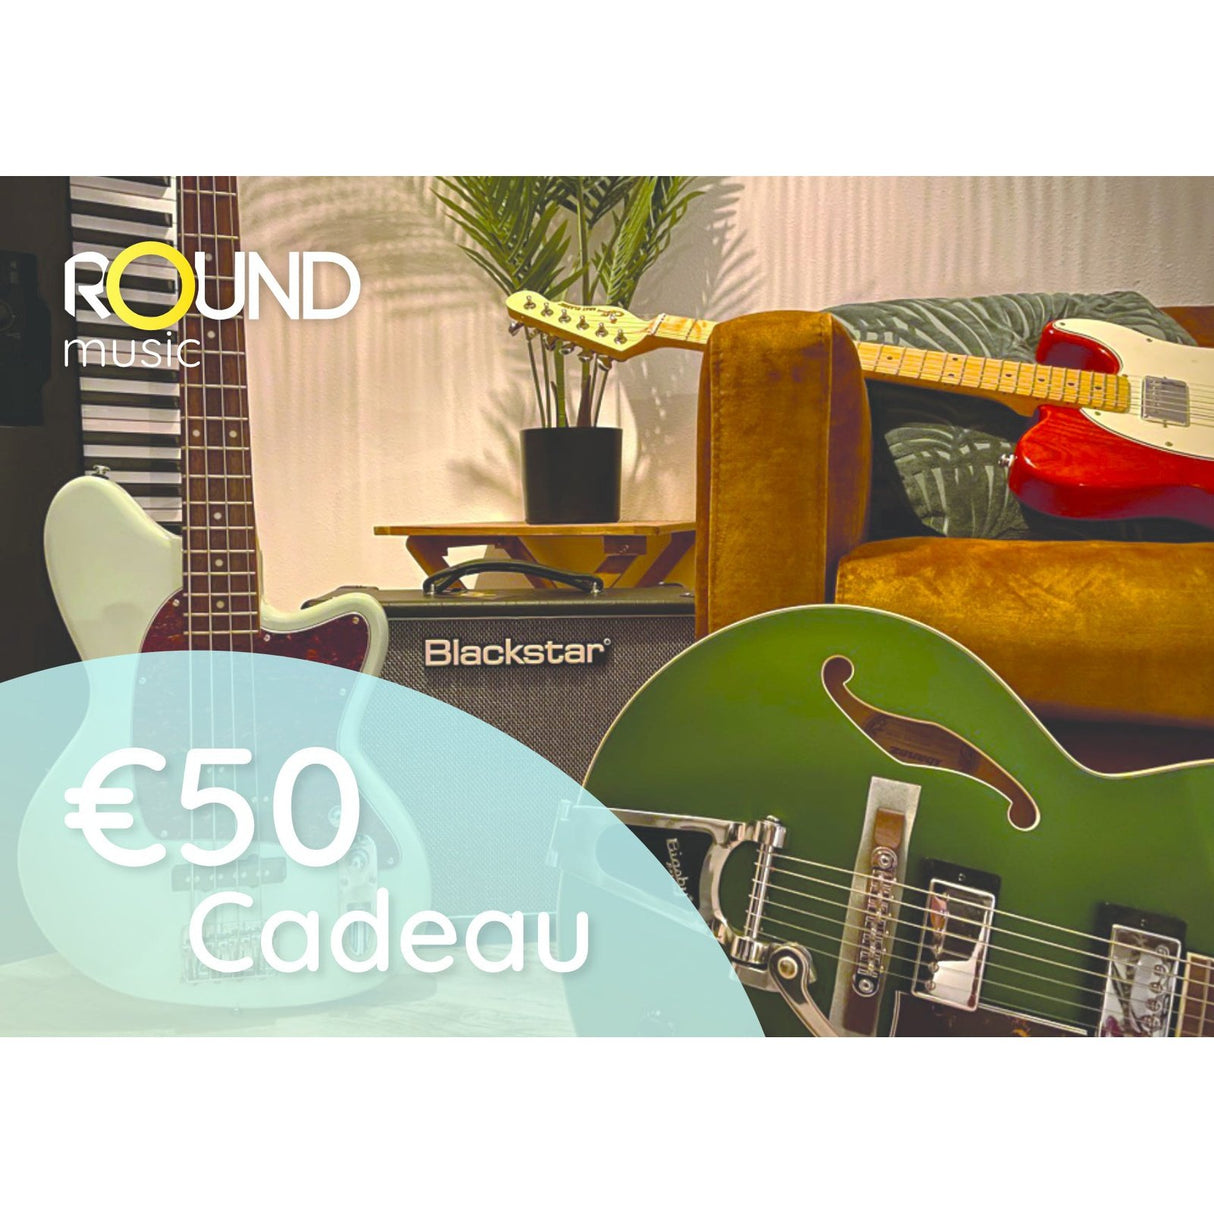 Round music Gift voucher €50,-